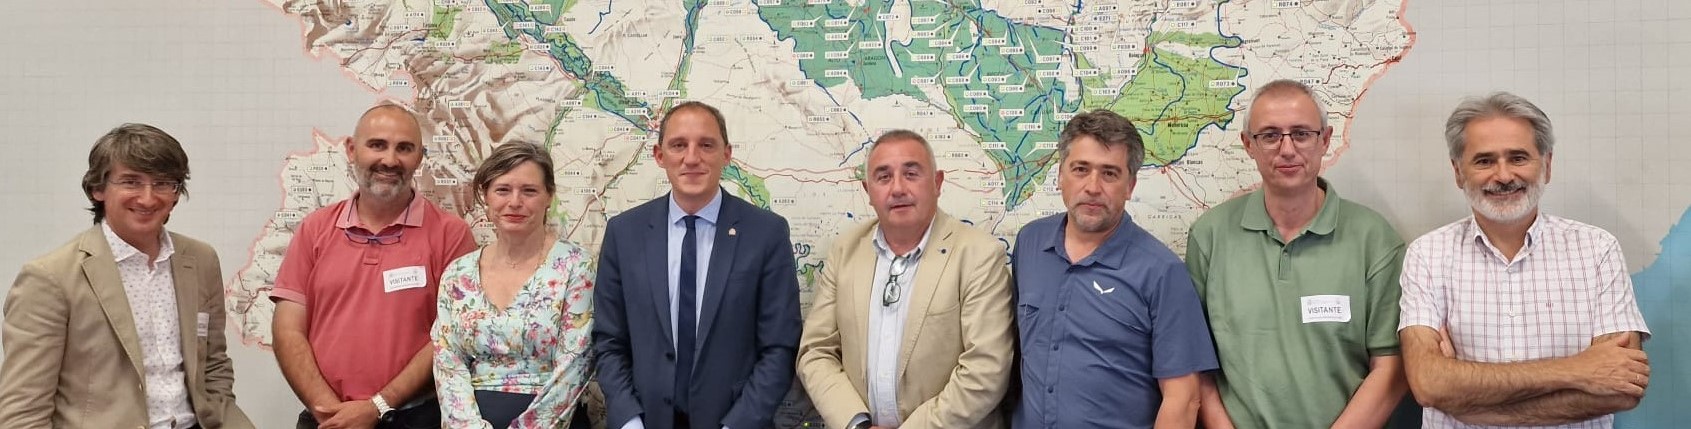 La CHE analiza con los principales colectivos agrarios de la provincia de Lleida la situación de sequía en la cuenca del Segre